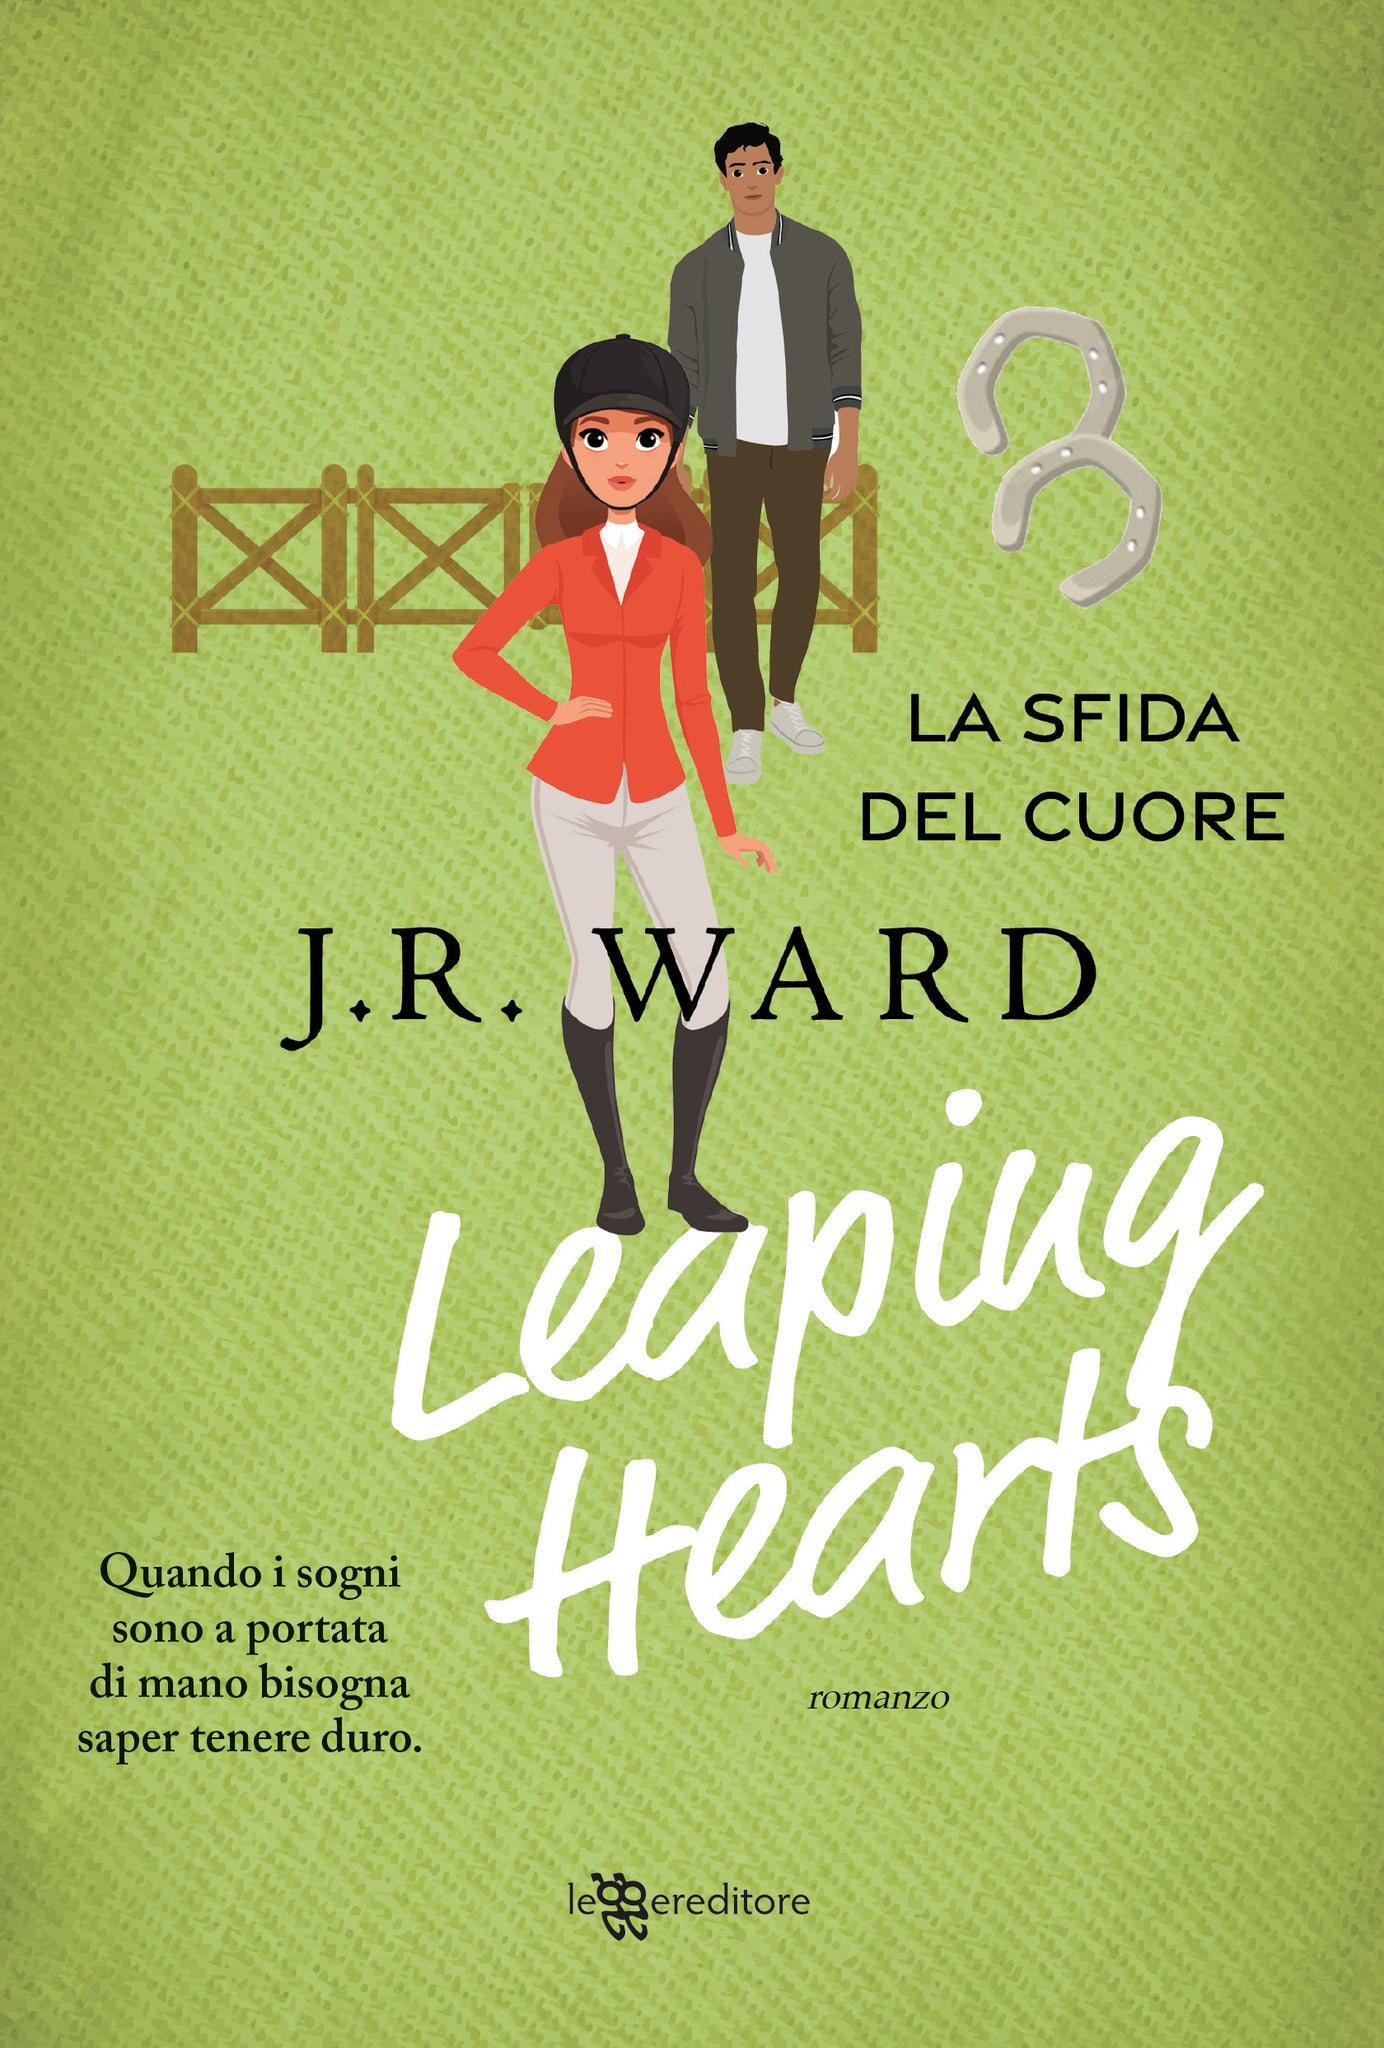 Leaping Hearts – La sfida del cuore